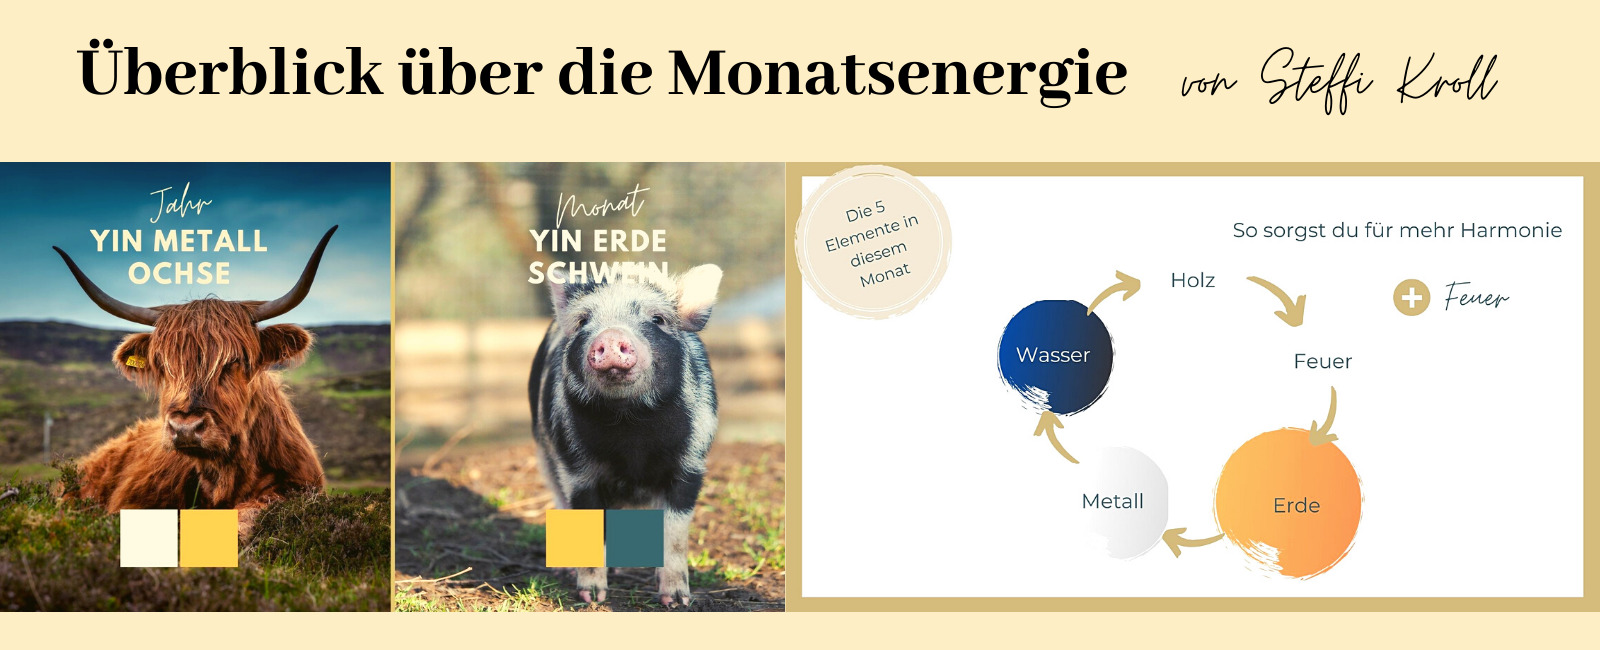 Ueberblick-ueber-die-Monatsenergie-von-Steffi-Kroll-November